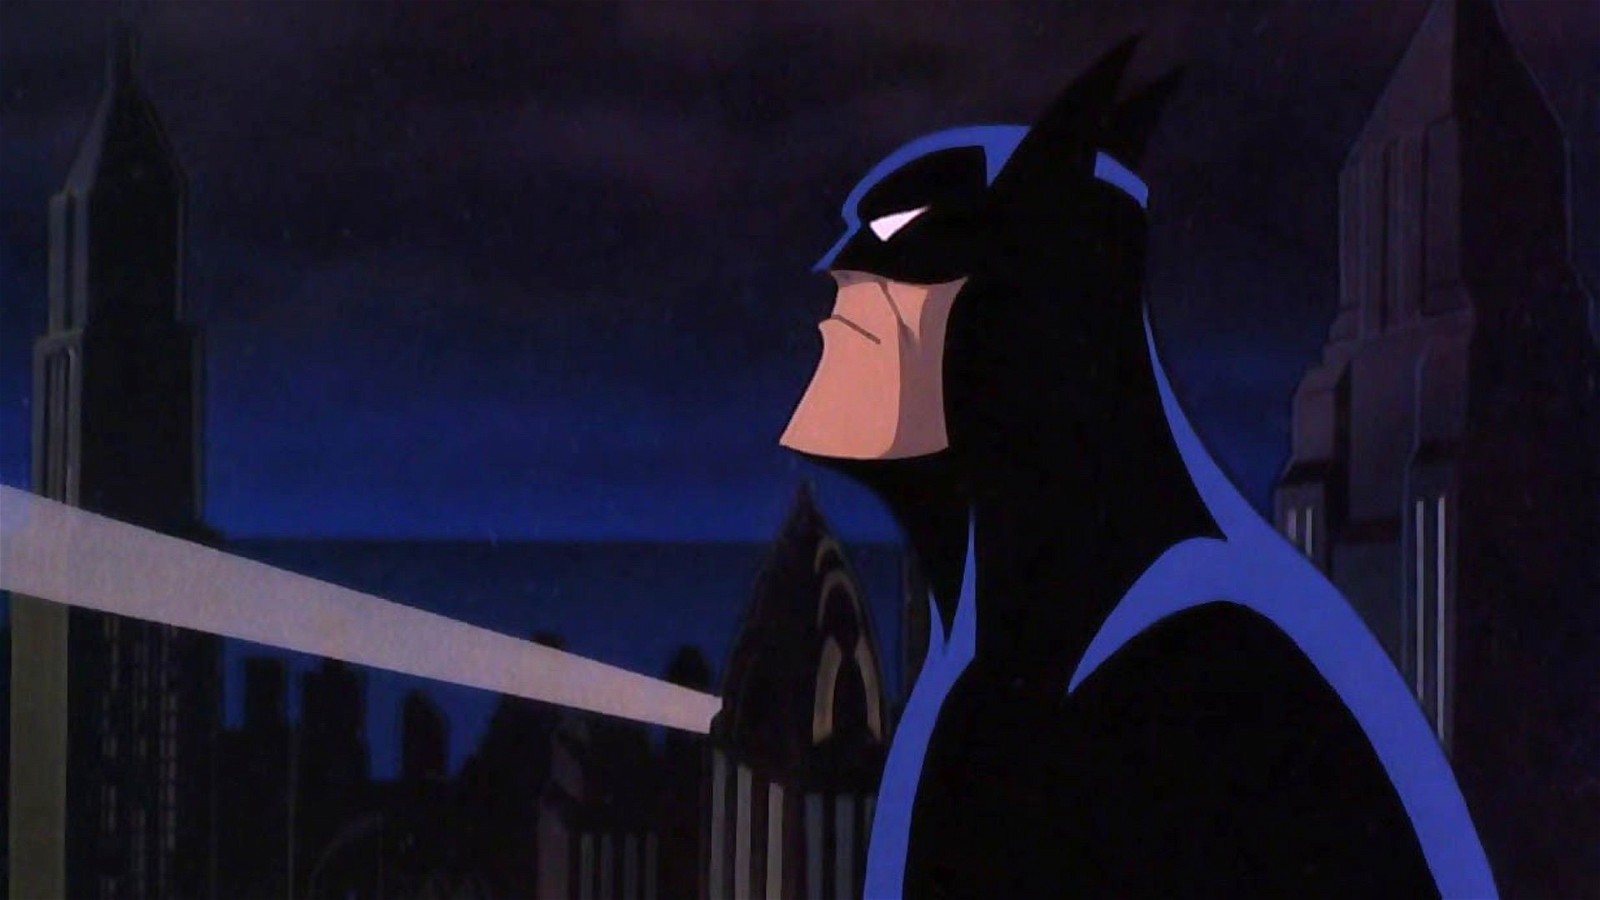 Bruce Wayne as Batman